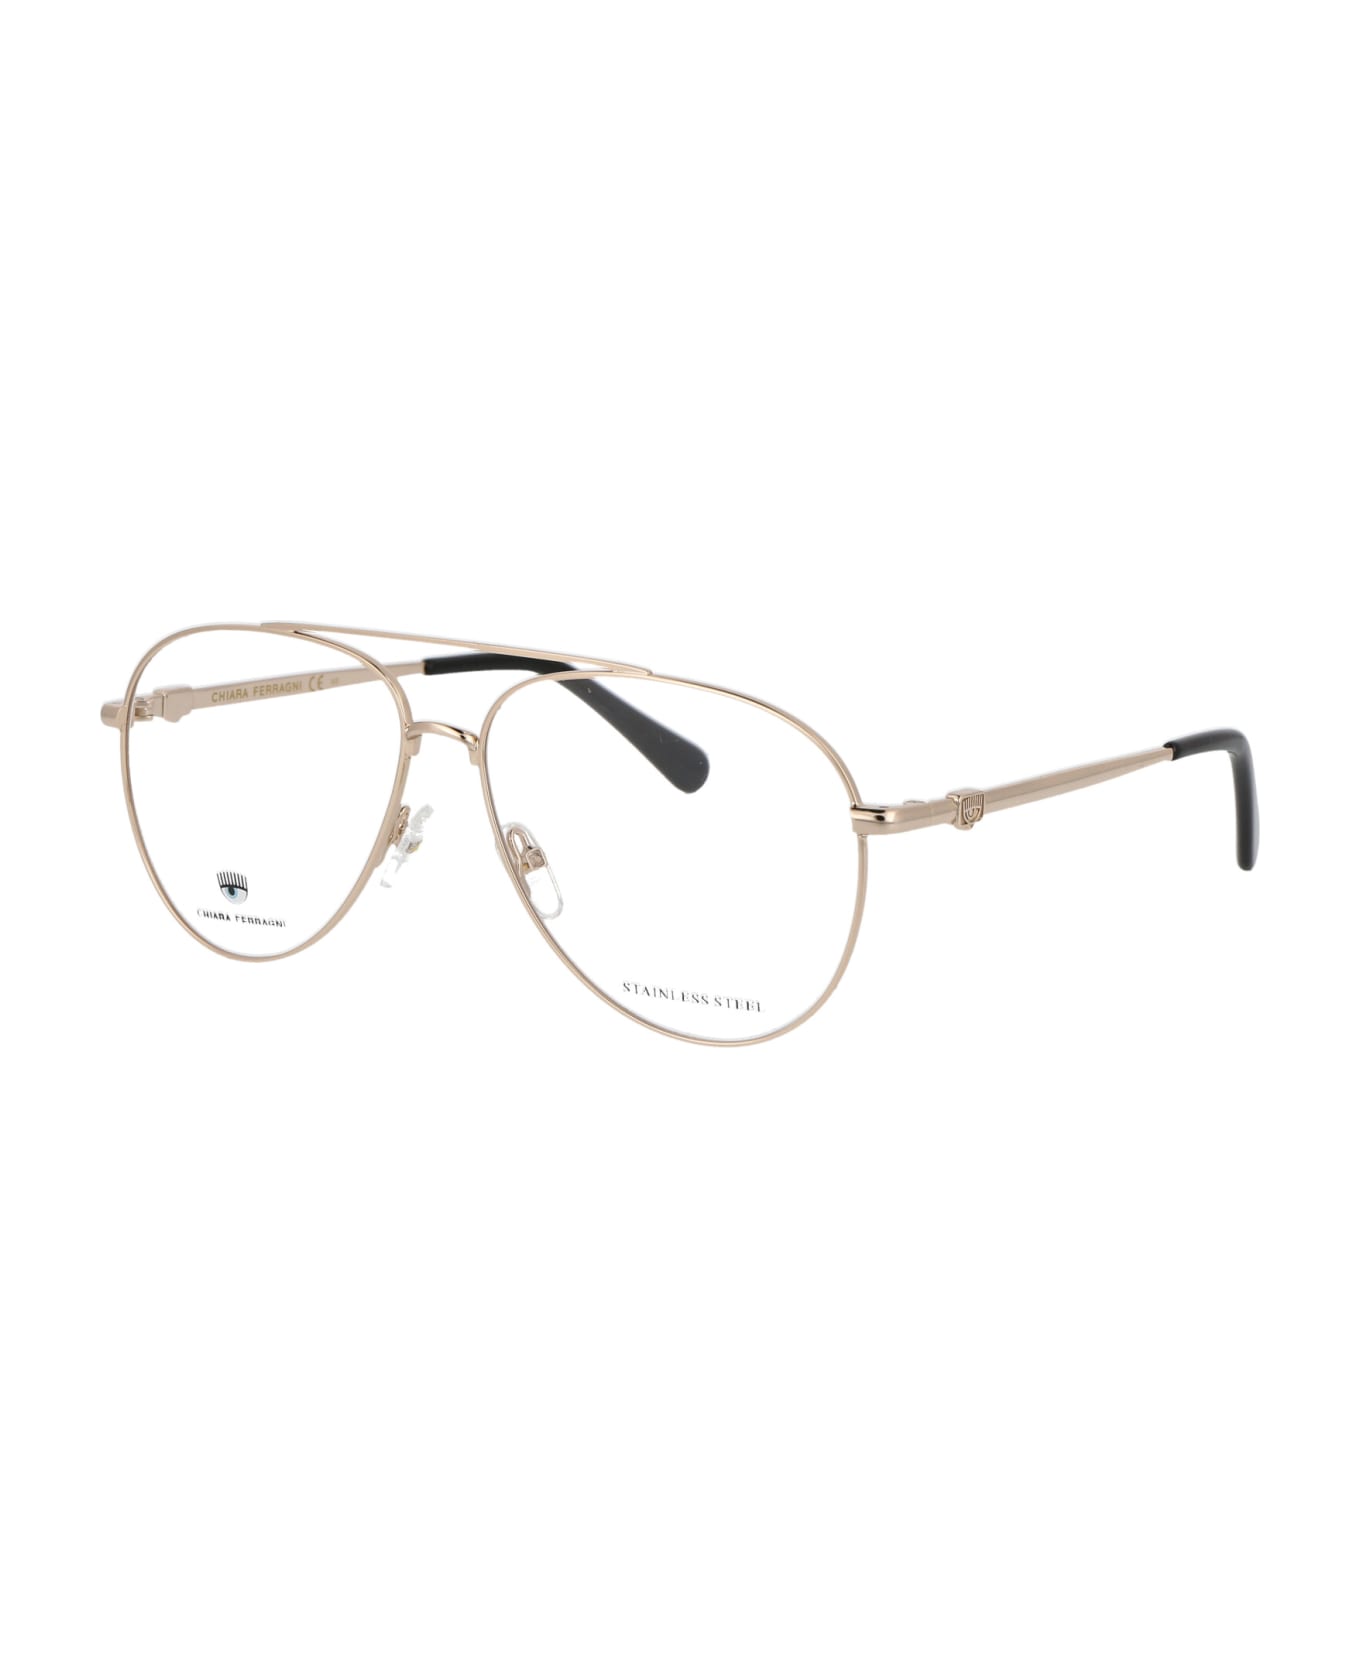 Chiara Ferragni Cf 1009 Glasses - J5G GOLD アイウェア